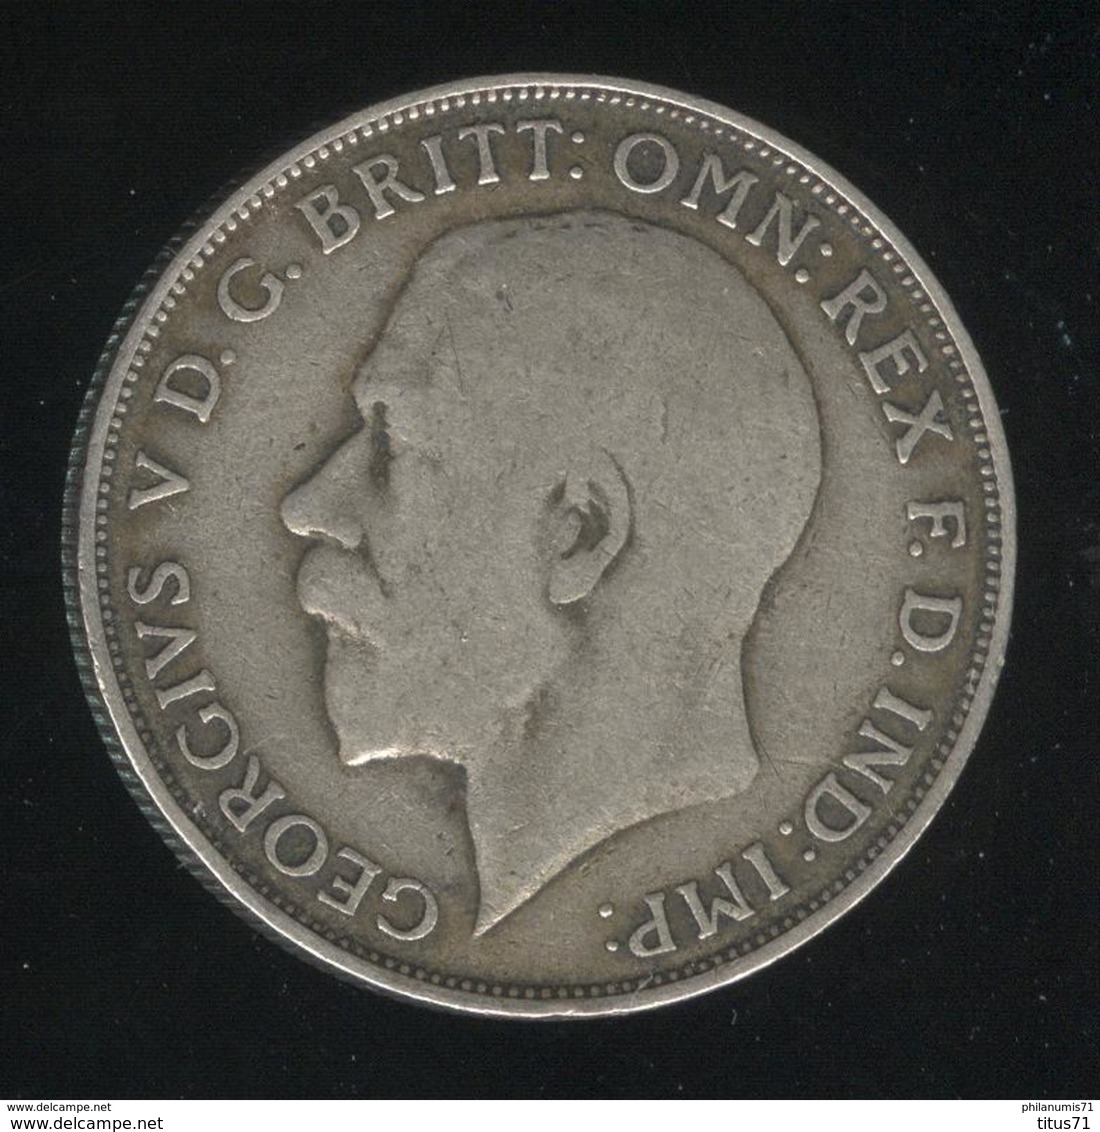 1 Florin Grande Bretagne / United Kingdom 1921 TTB - J. 1 Florin / 2 Shillings